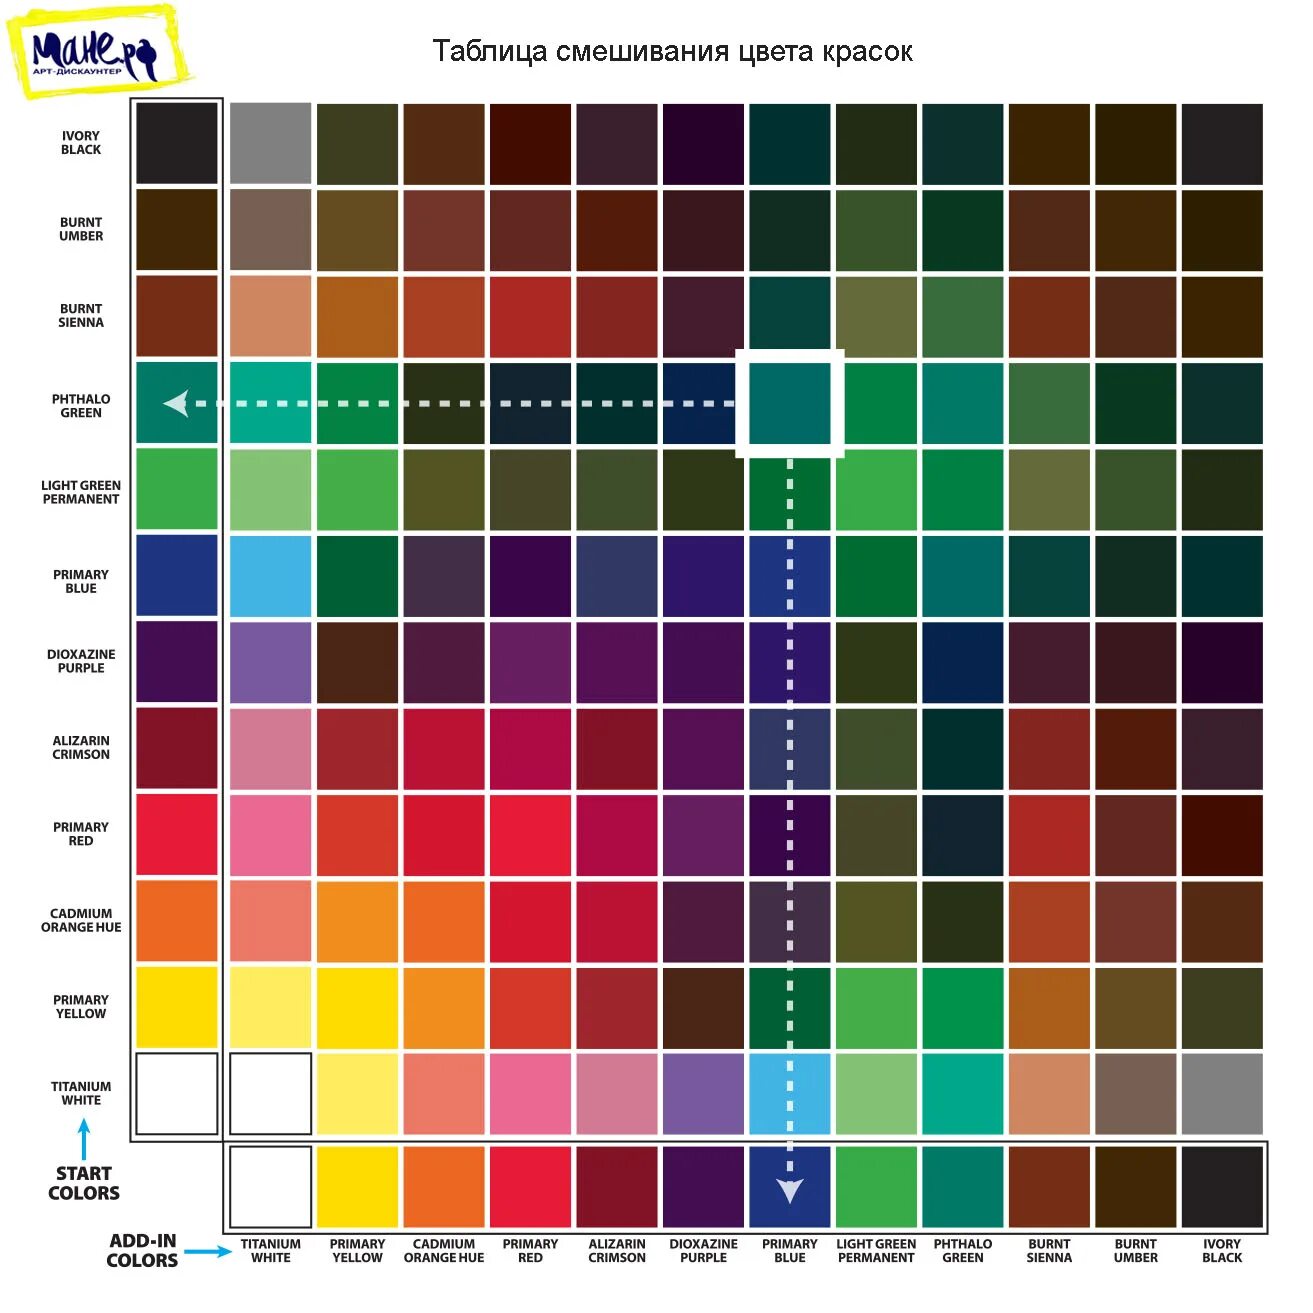 Таблица цветов тканей. Как смешивать цвета красок акриловых таблица. Смешивание красок таблица акрил. Колеровочная таблица для смешивания красок. Палитра смешения цветов основных красок красок.